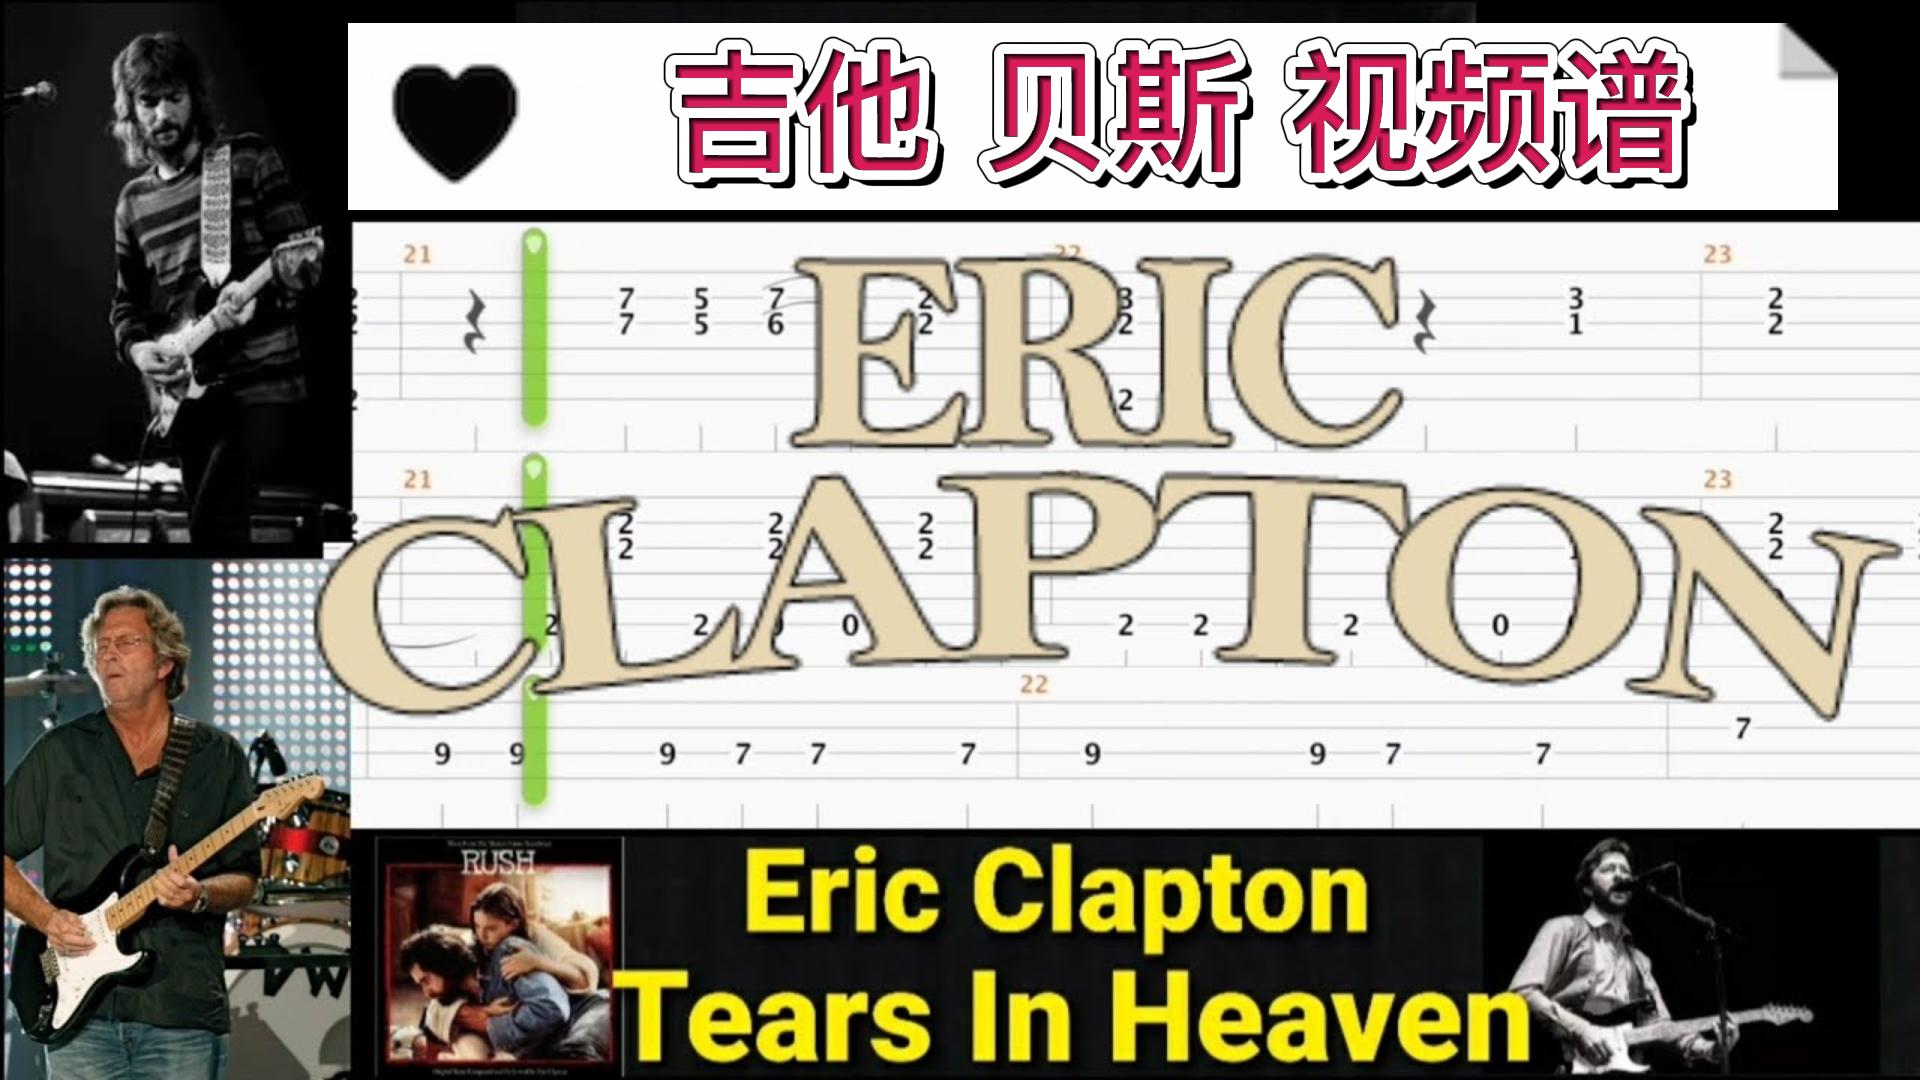 埃里克·克莱普顿 经典歌曲 《Tears In Heaven 》吉他贝斯视频谱-古桐博客